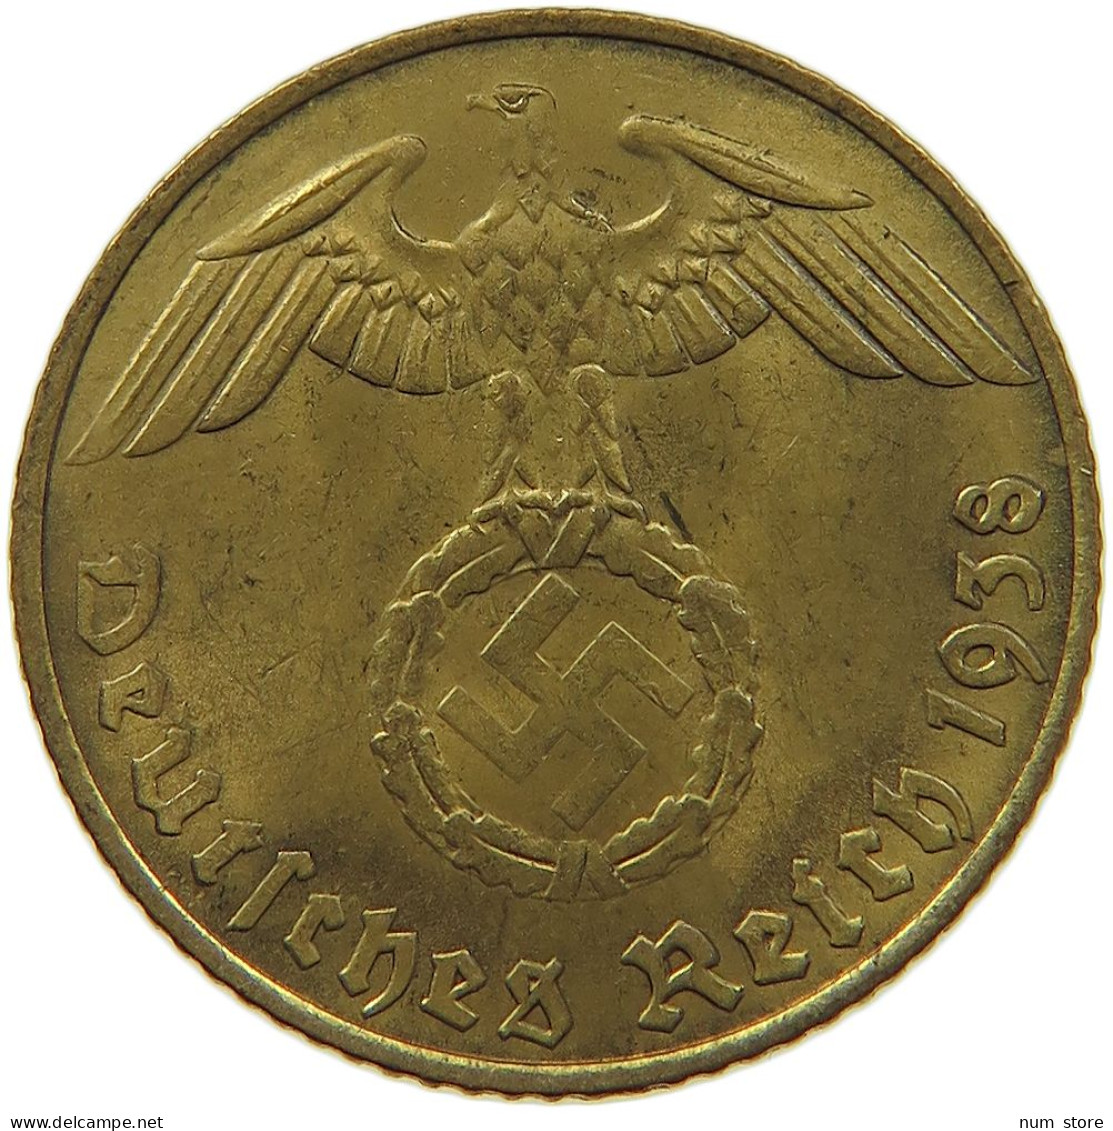 GERMANY 5 REICHSPFENNIG 1938 E #s091 0583 - 5 Reichspfennig